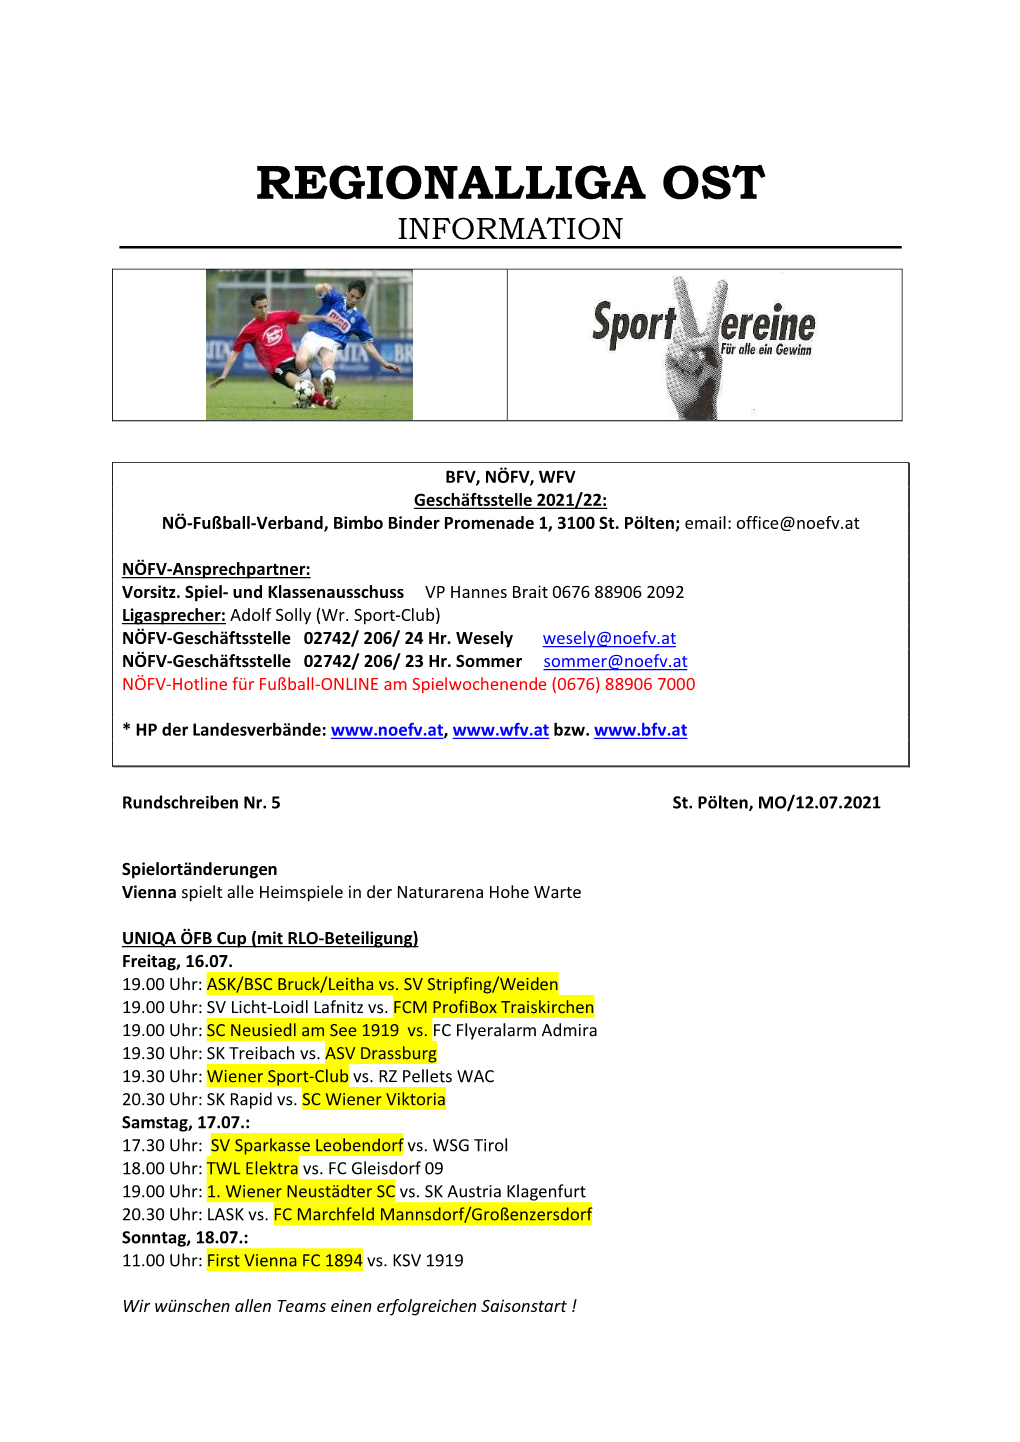 Regionalliga Ost Information